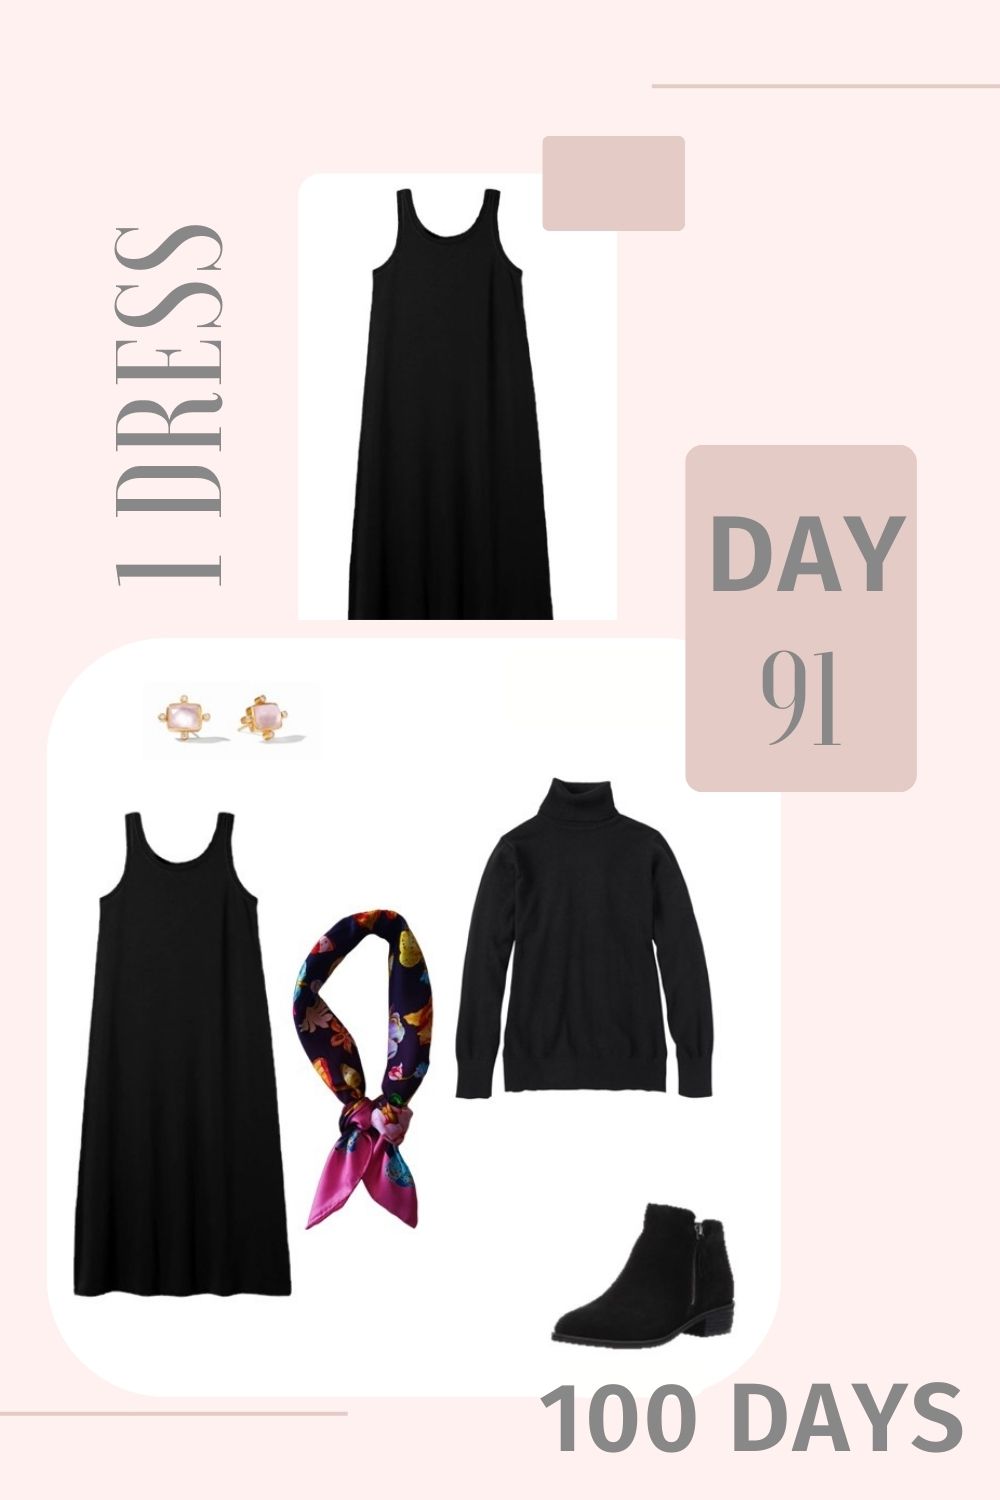 1 Dress 100 Days - Day 91